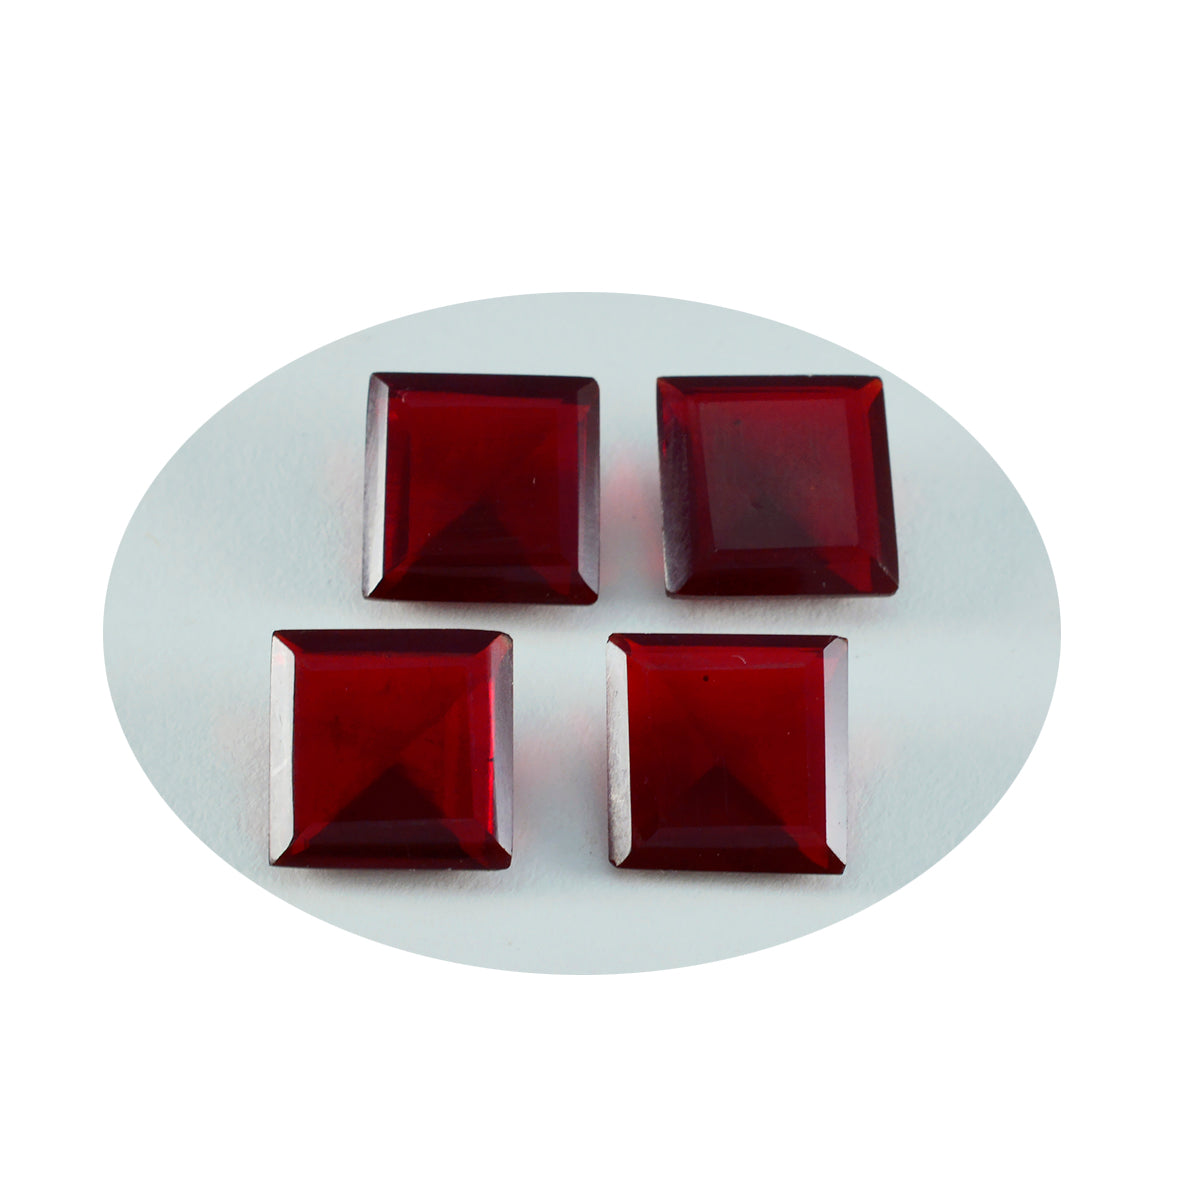 Riyogems 1 Stück roter Rubin mit CZ, facettiert, 15 x 15 mm, quadratische Form, süßer Qualitätsstein